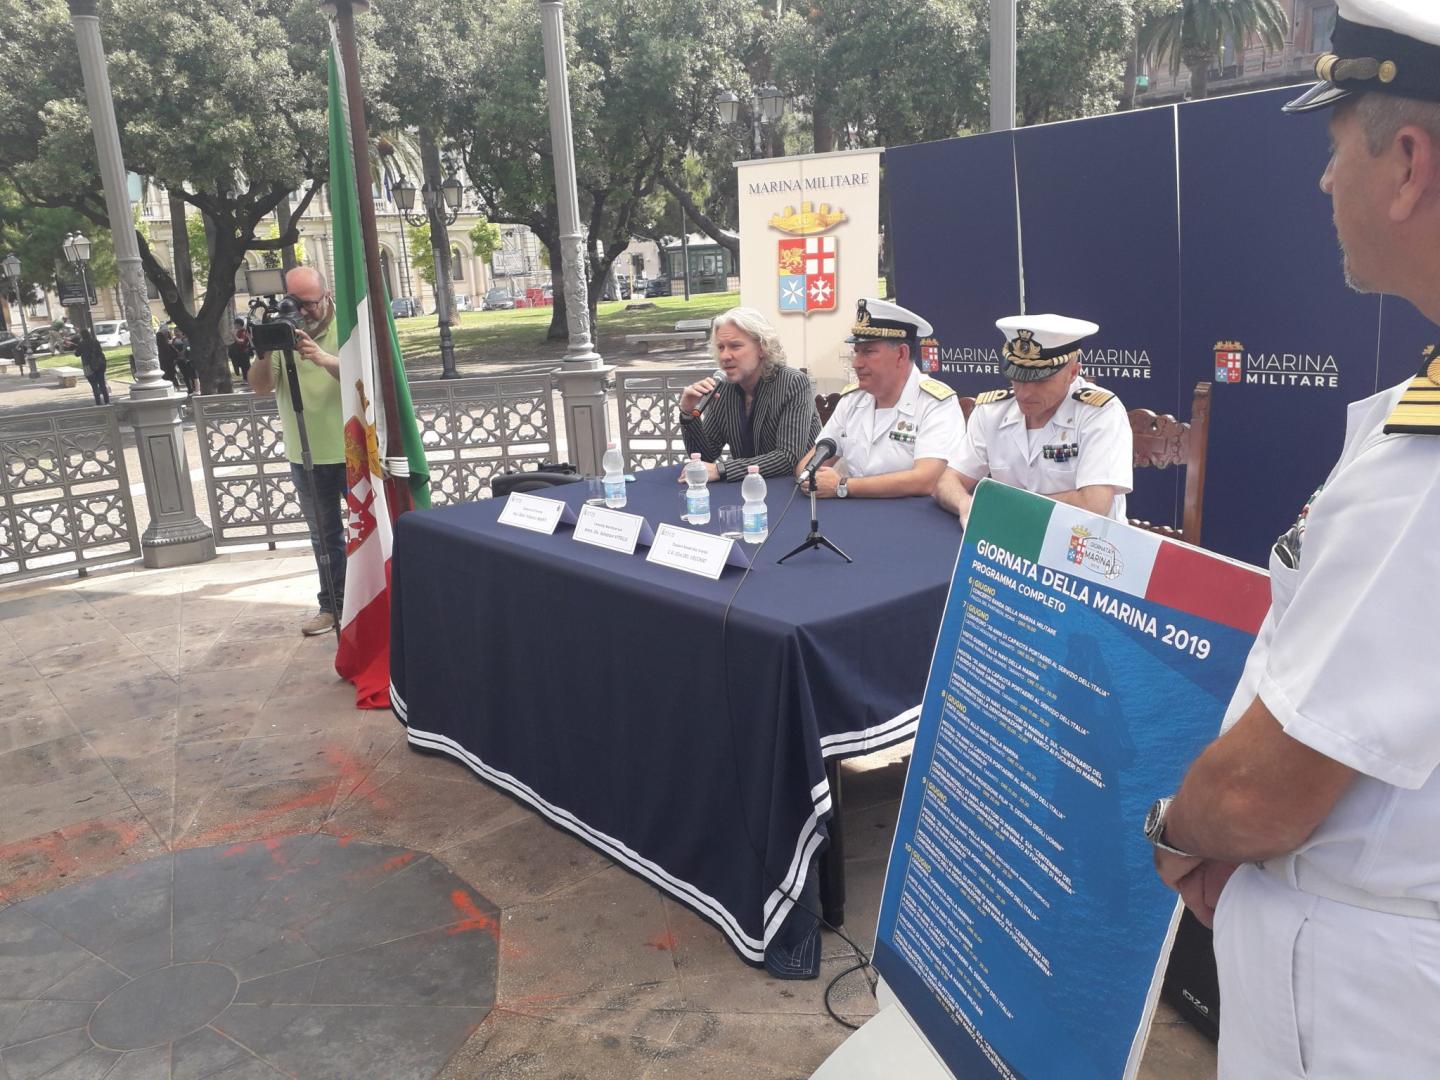 Marina Militare: a Taranto si celebra la Giornata della Marina 2019